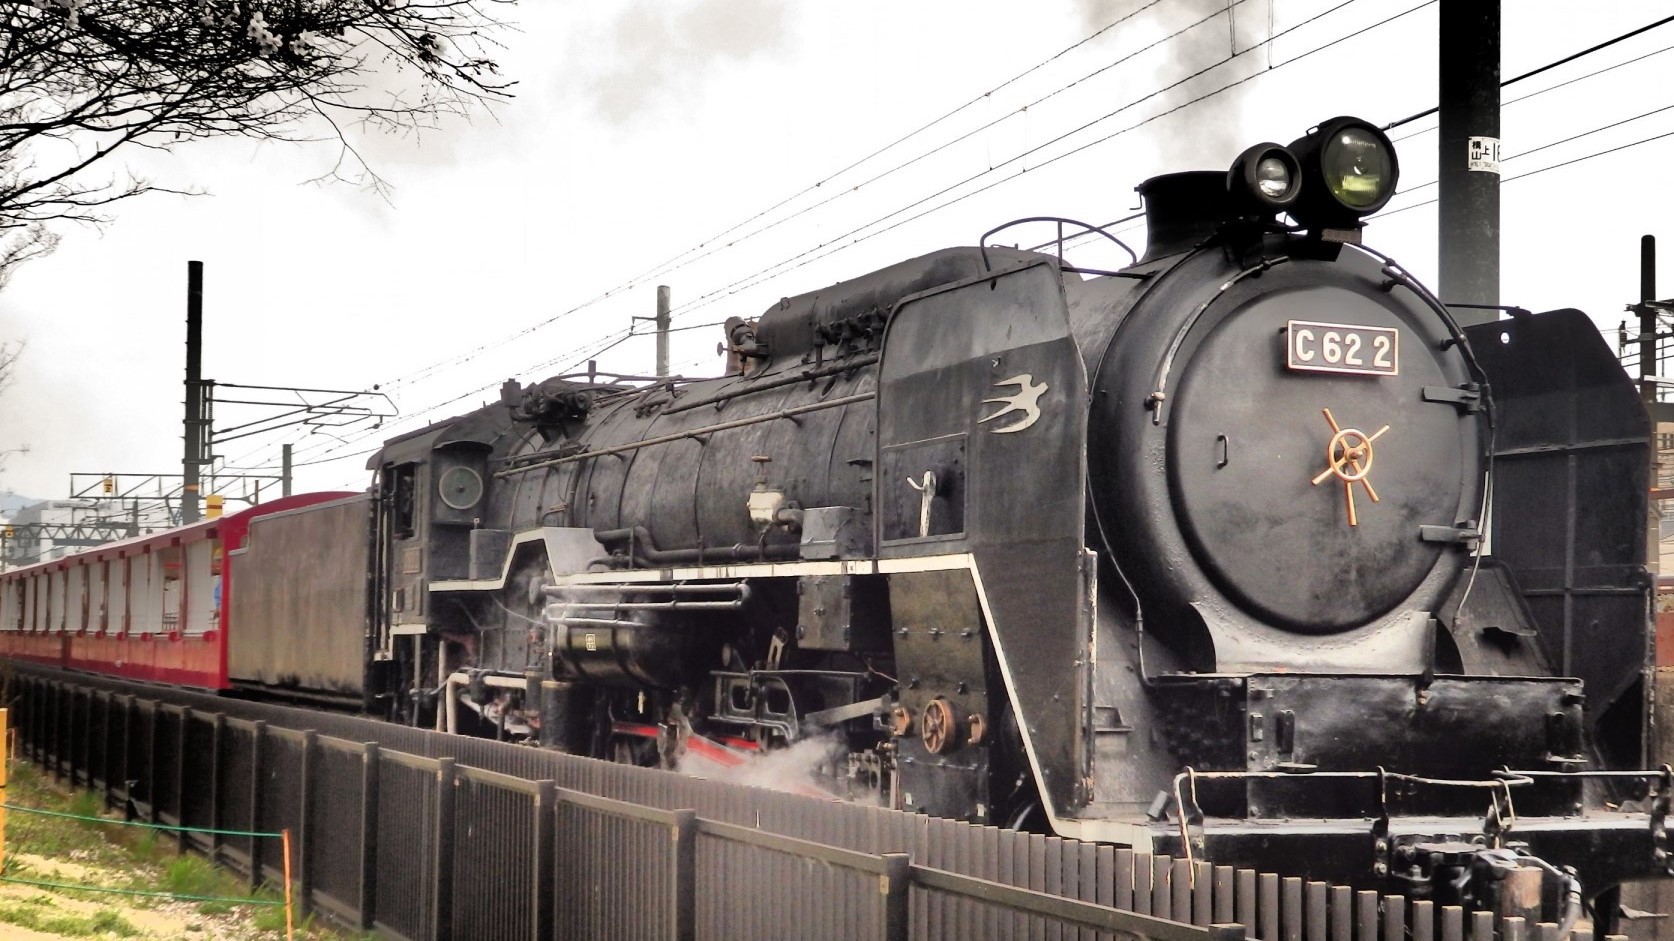 京都鉄道博物館蒸気機関車「SLスチーム号」が牽引する客車に乗車することができます。